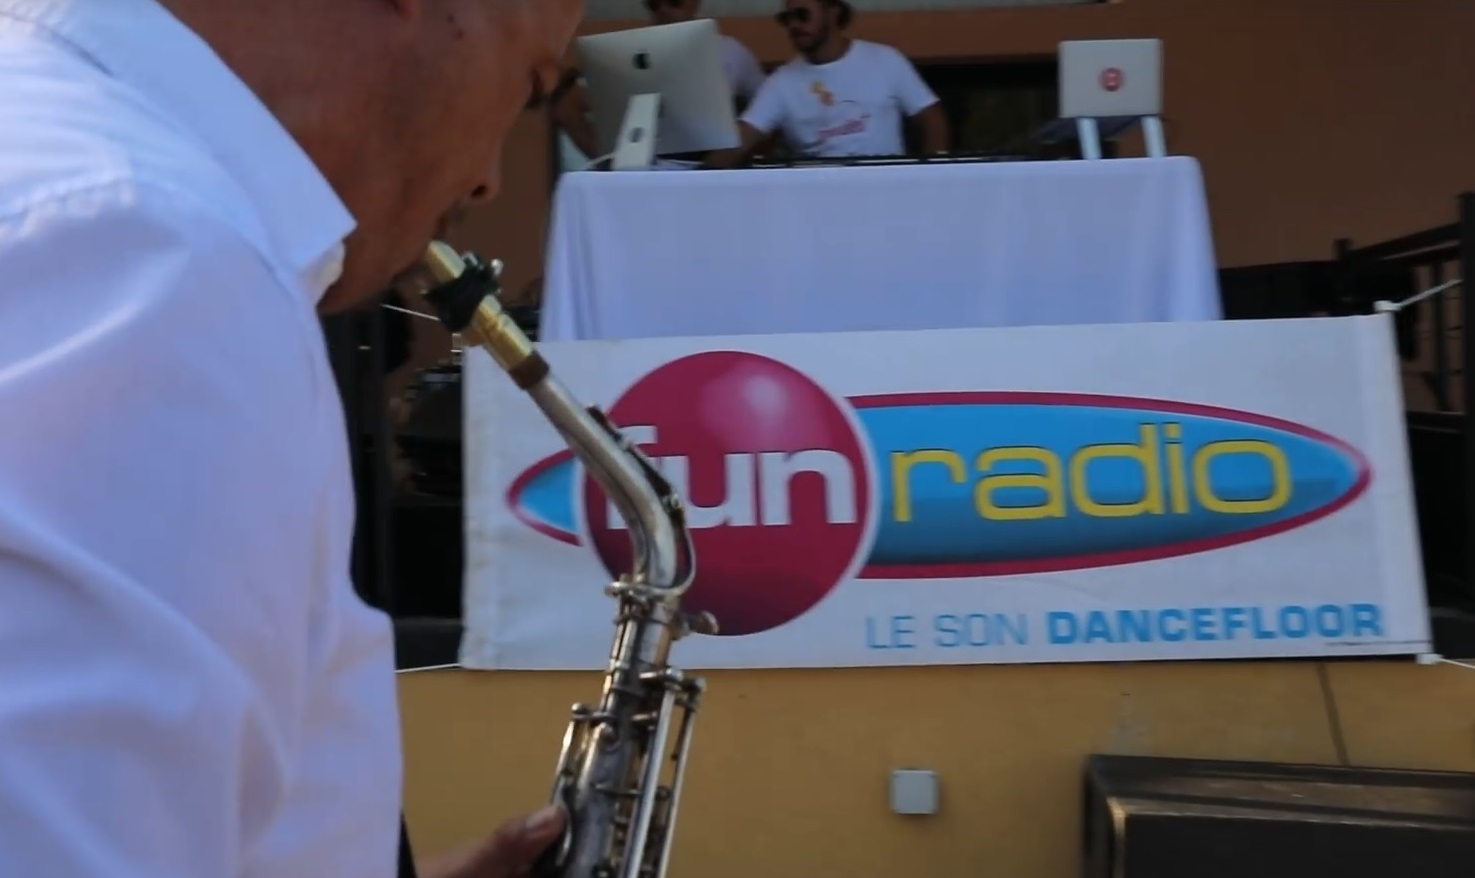 Sax Fun radio France